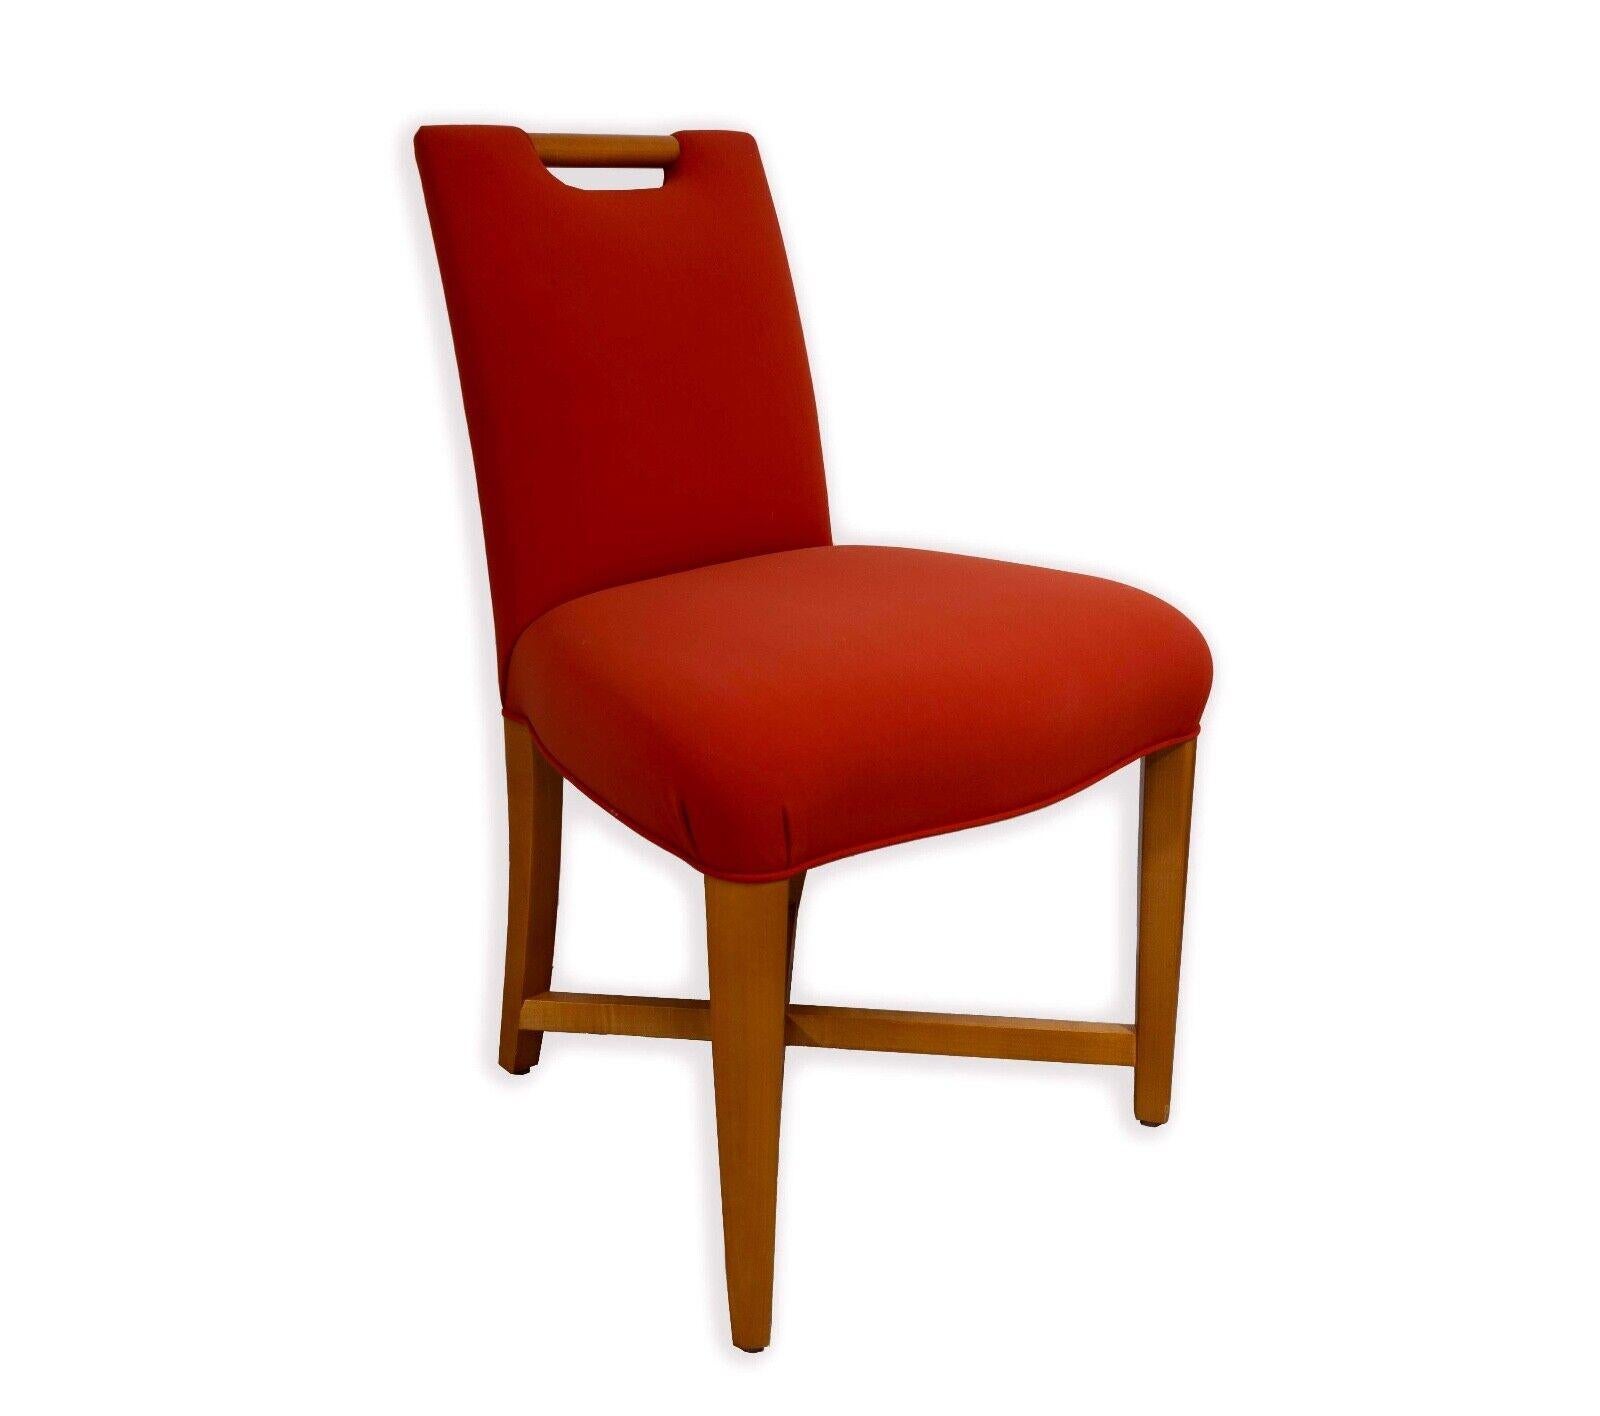 Cet ensemble de quatre chaises d'appoint modernes du milieu du siècle de Donghia, témoigne d'un design intemporel et d'un artisanat de qualité. Chaque chaise est dotée d'une assise et d'un dossier rembourrés d'un orange vibrant, apportant une touche